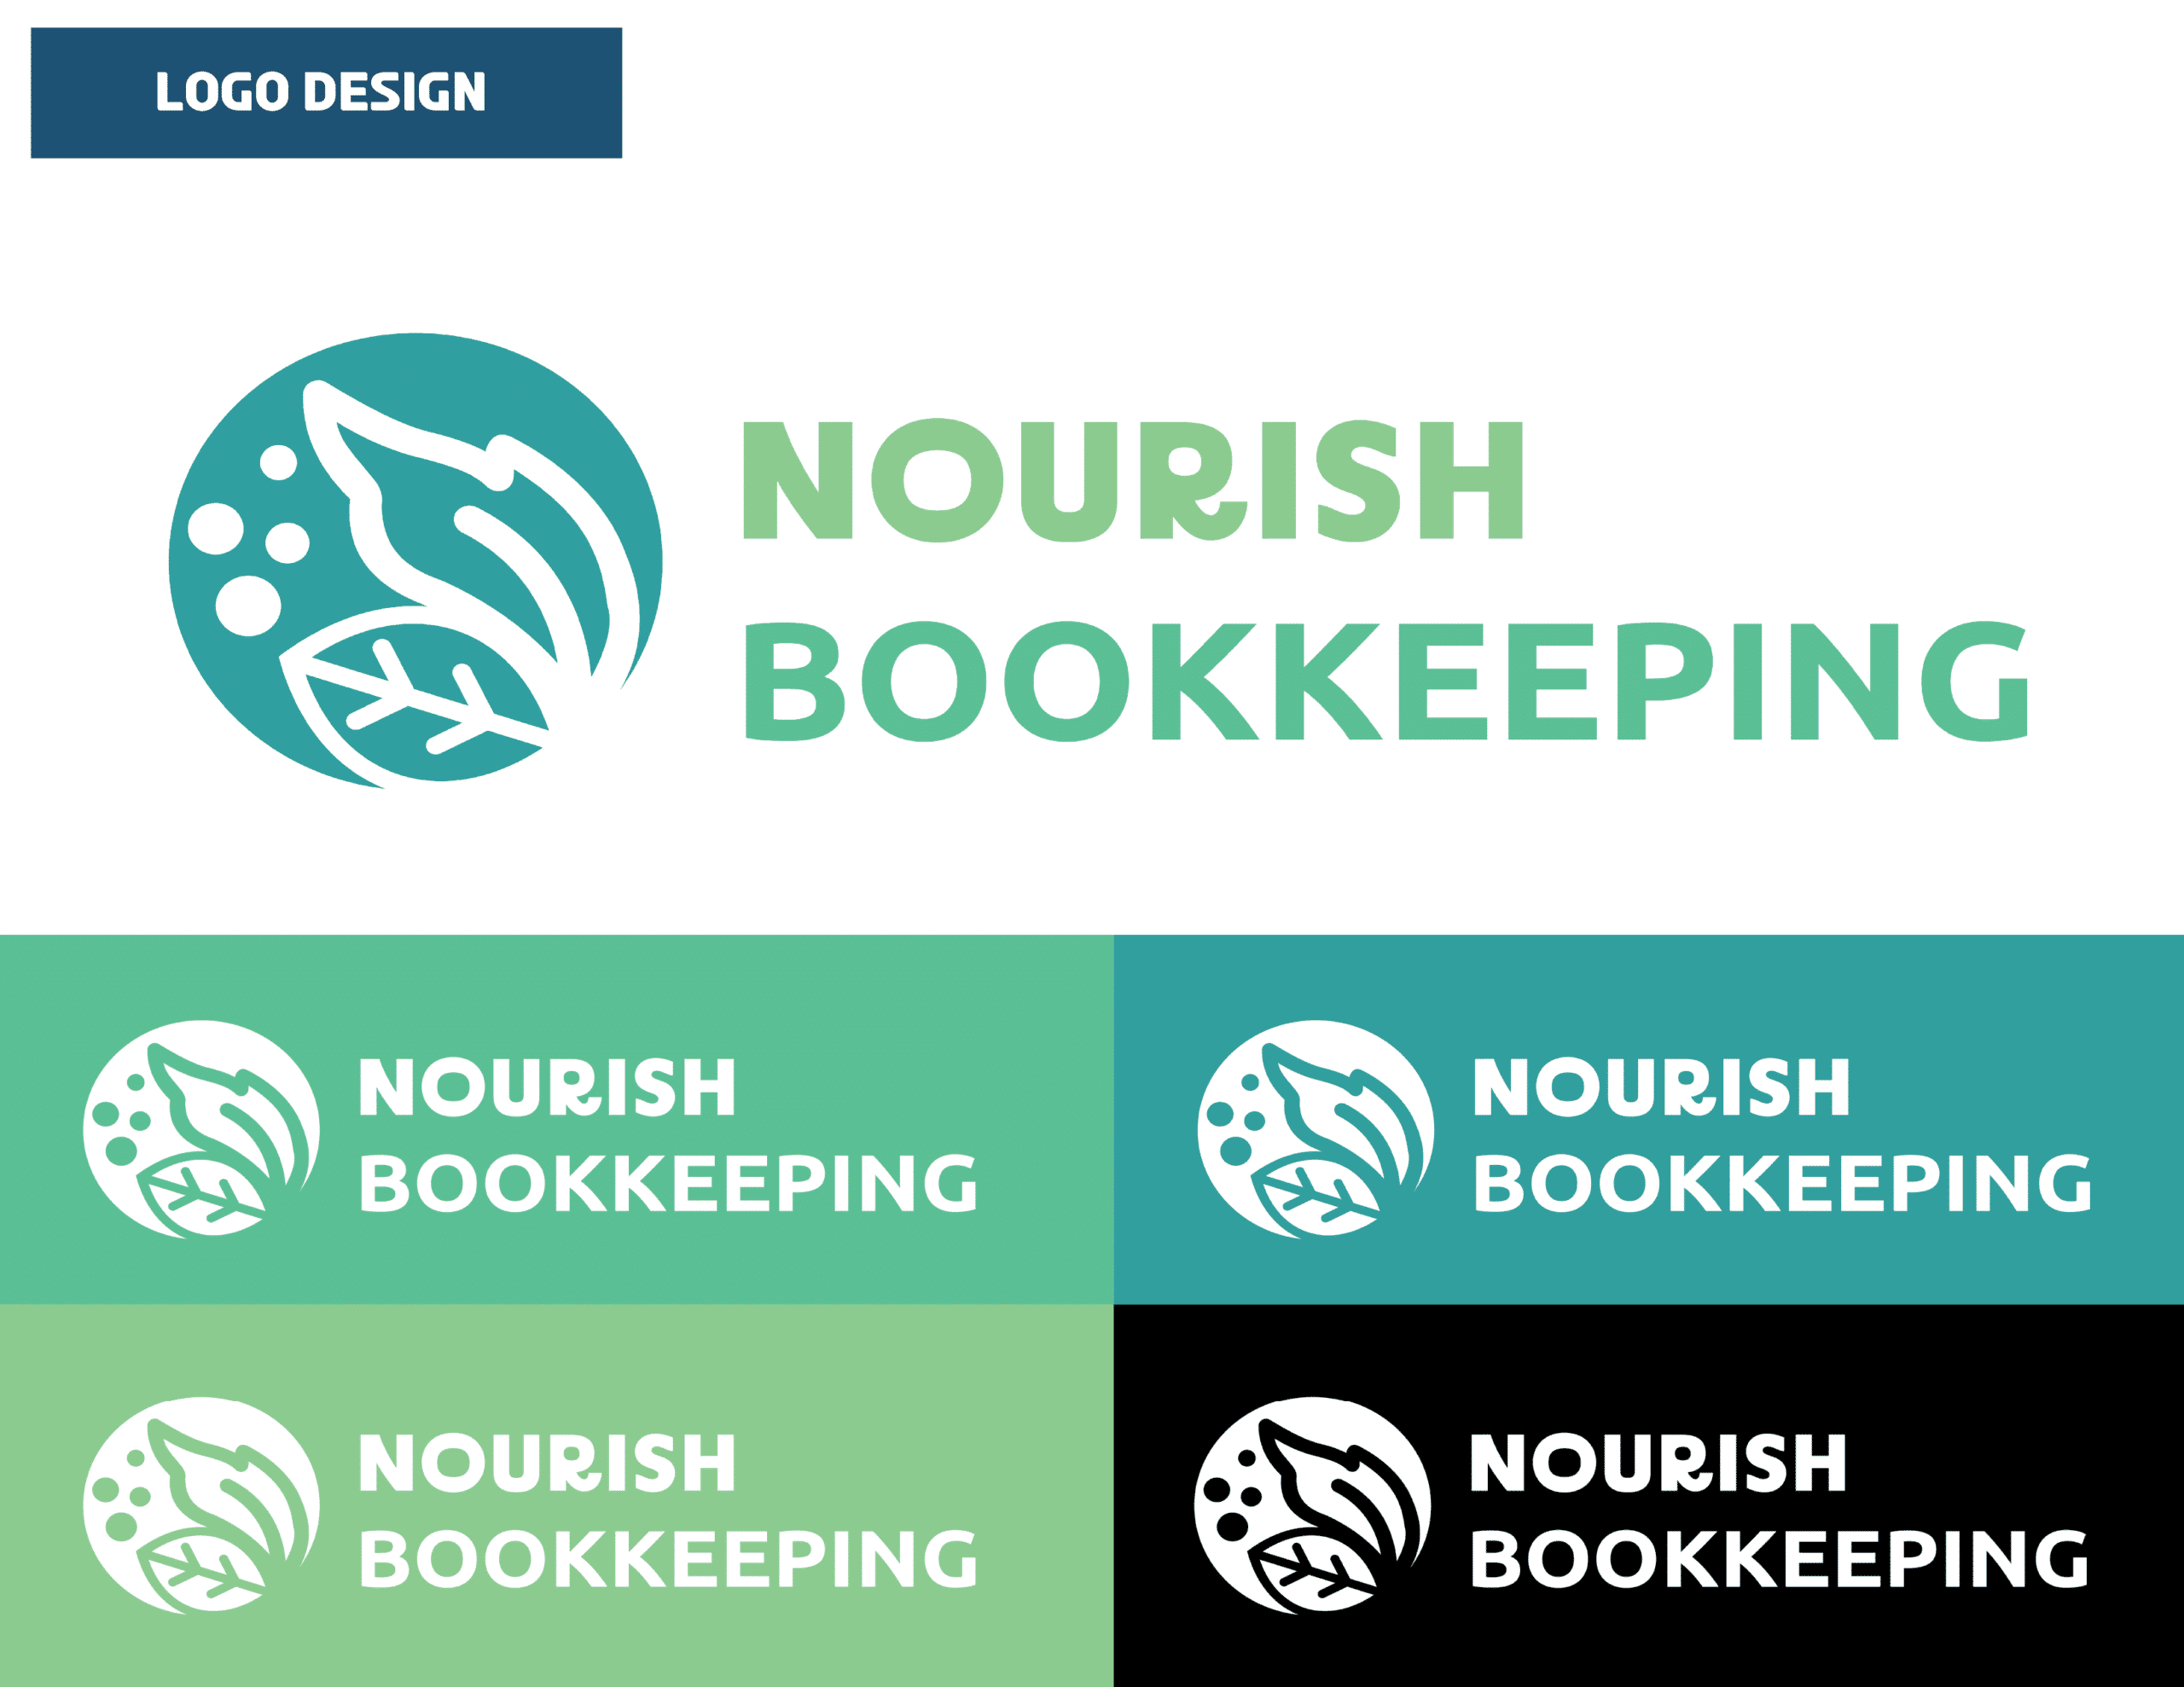 01_NourishBookkeeping_Logo Design